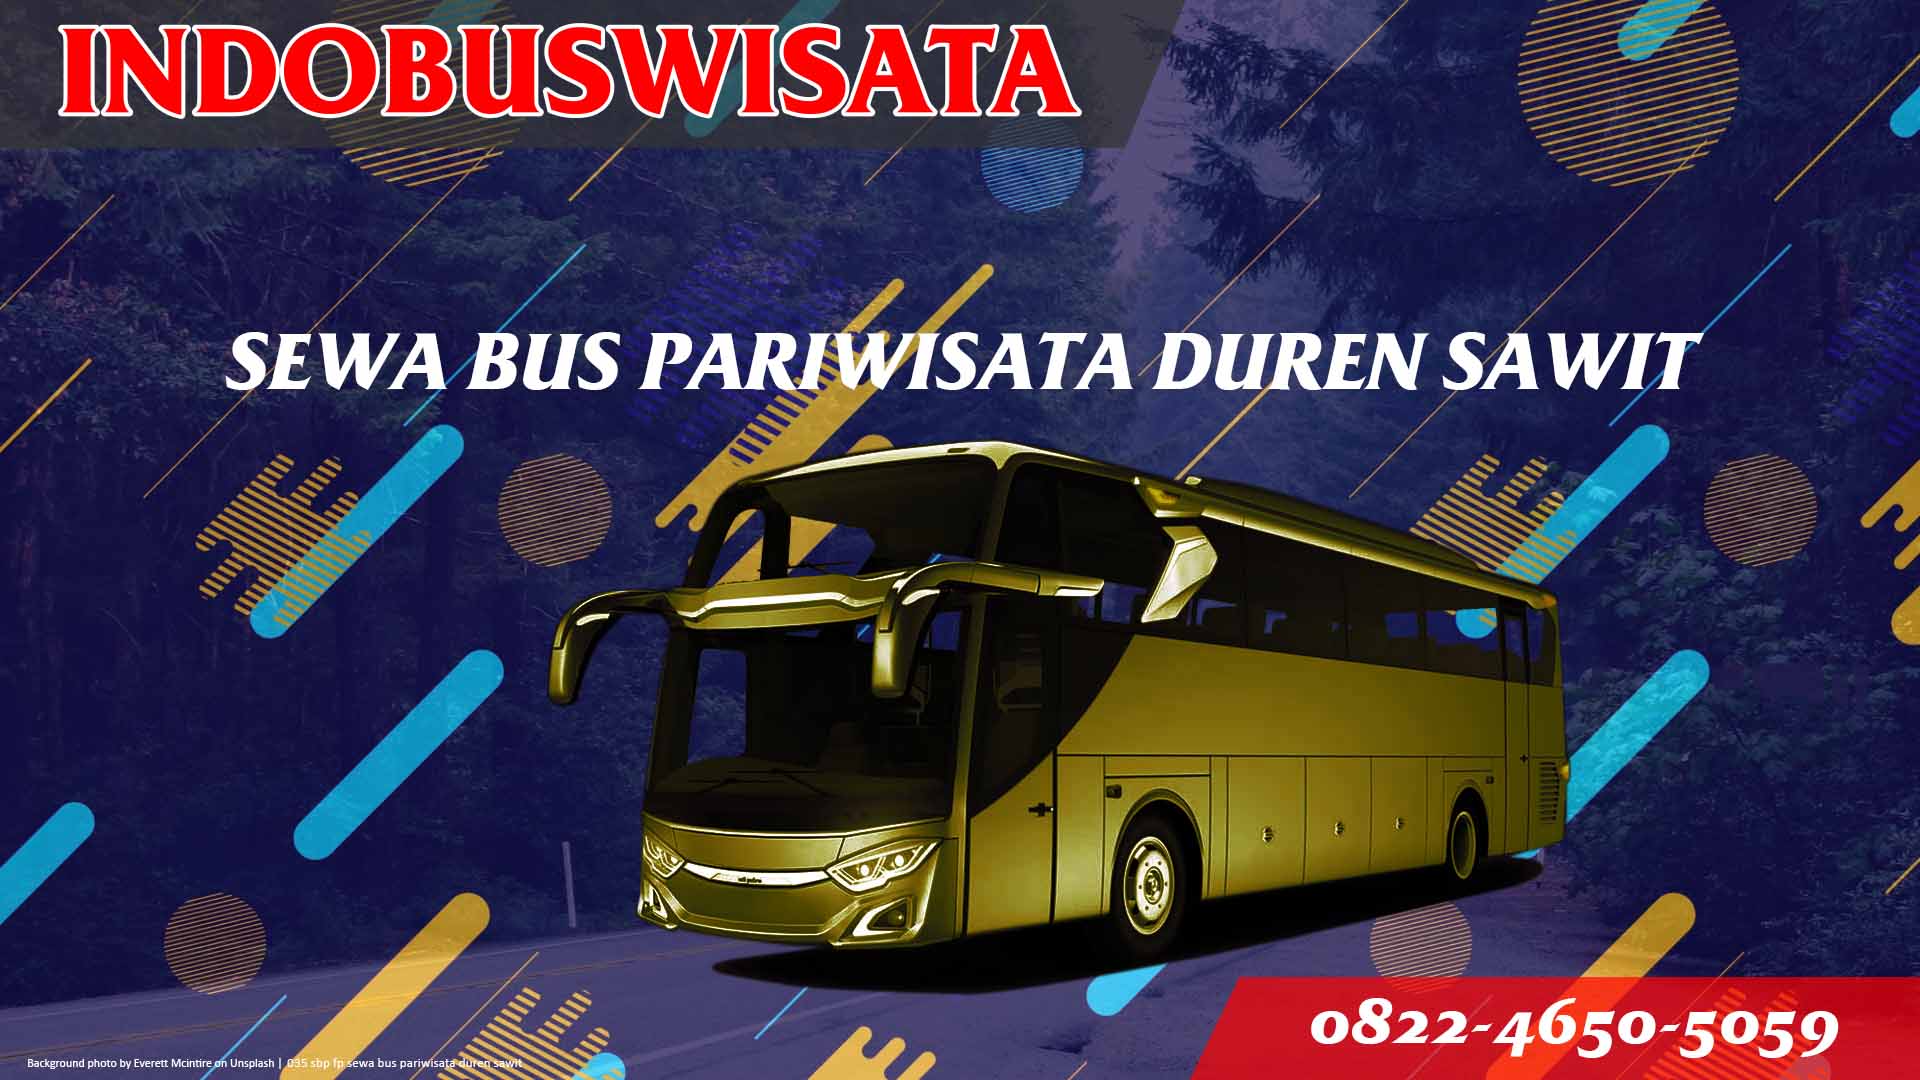 035 Sbp Fp Sewa Bus Pariwisata Duren Sawit Indobuswisata